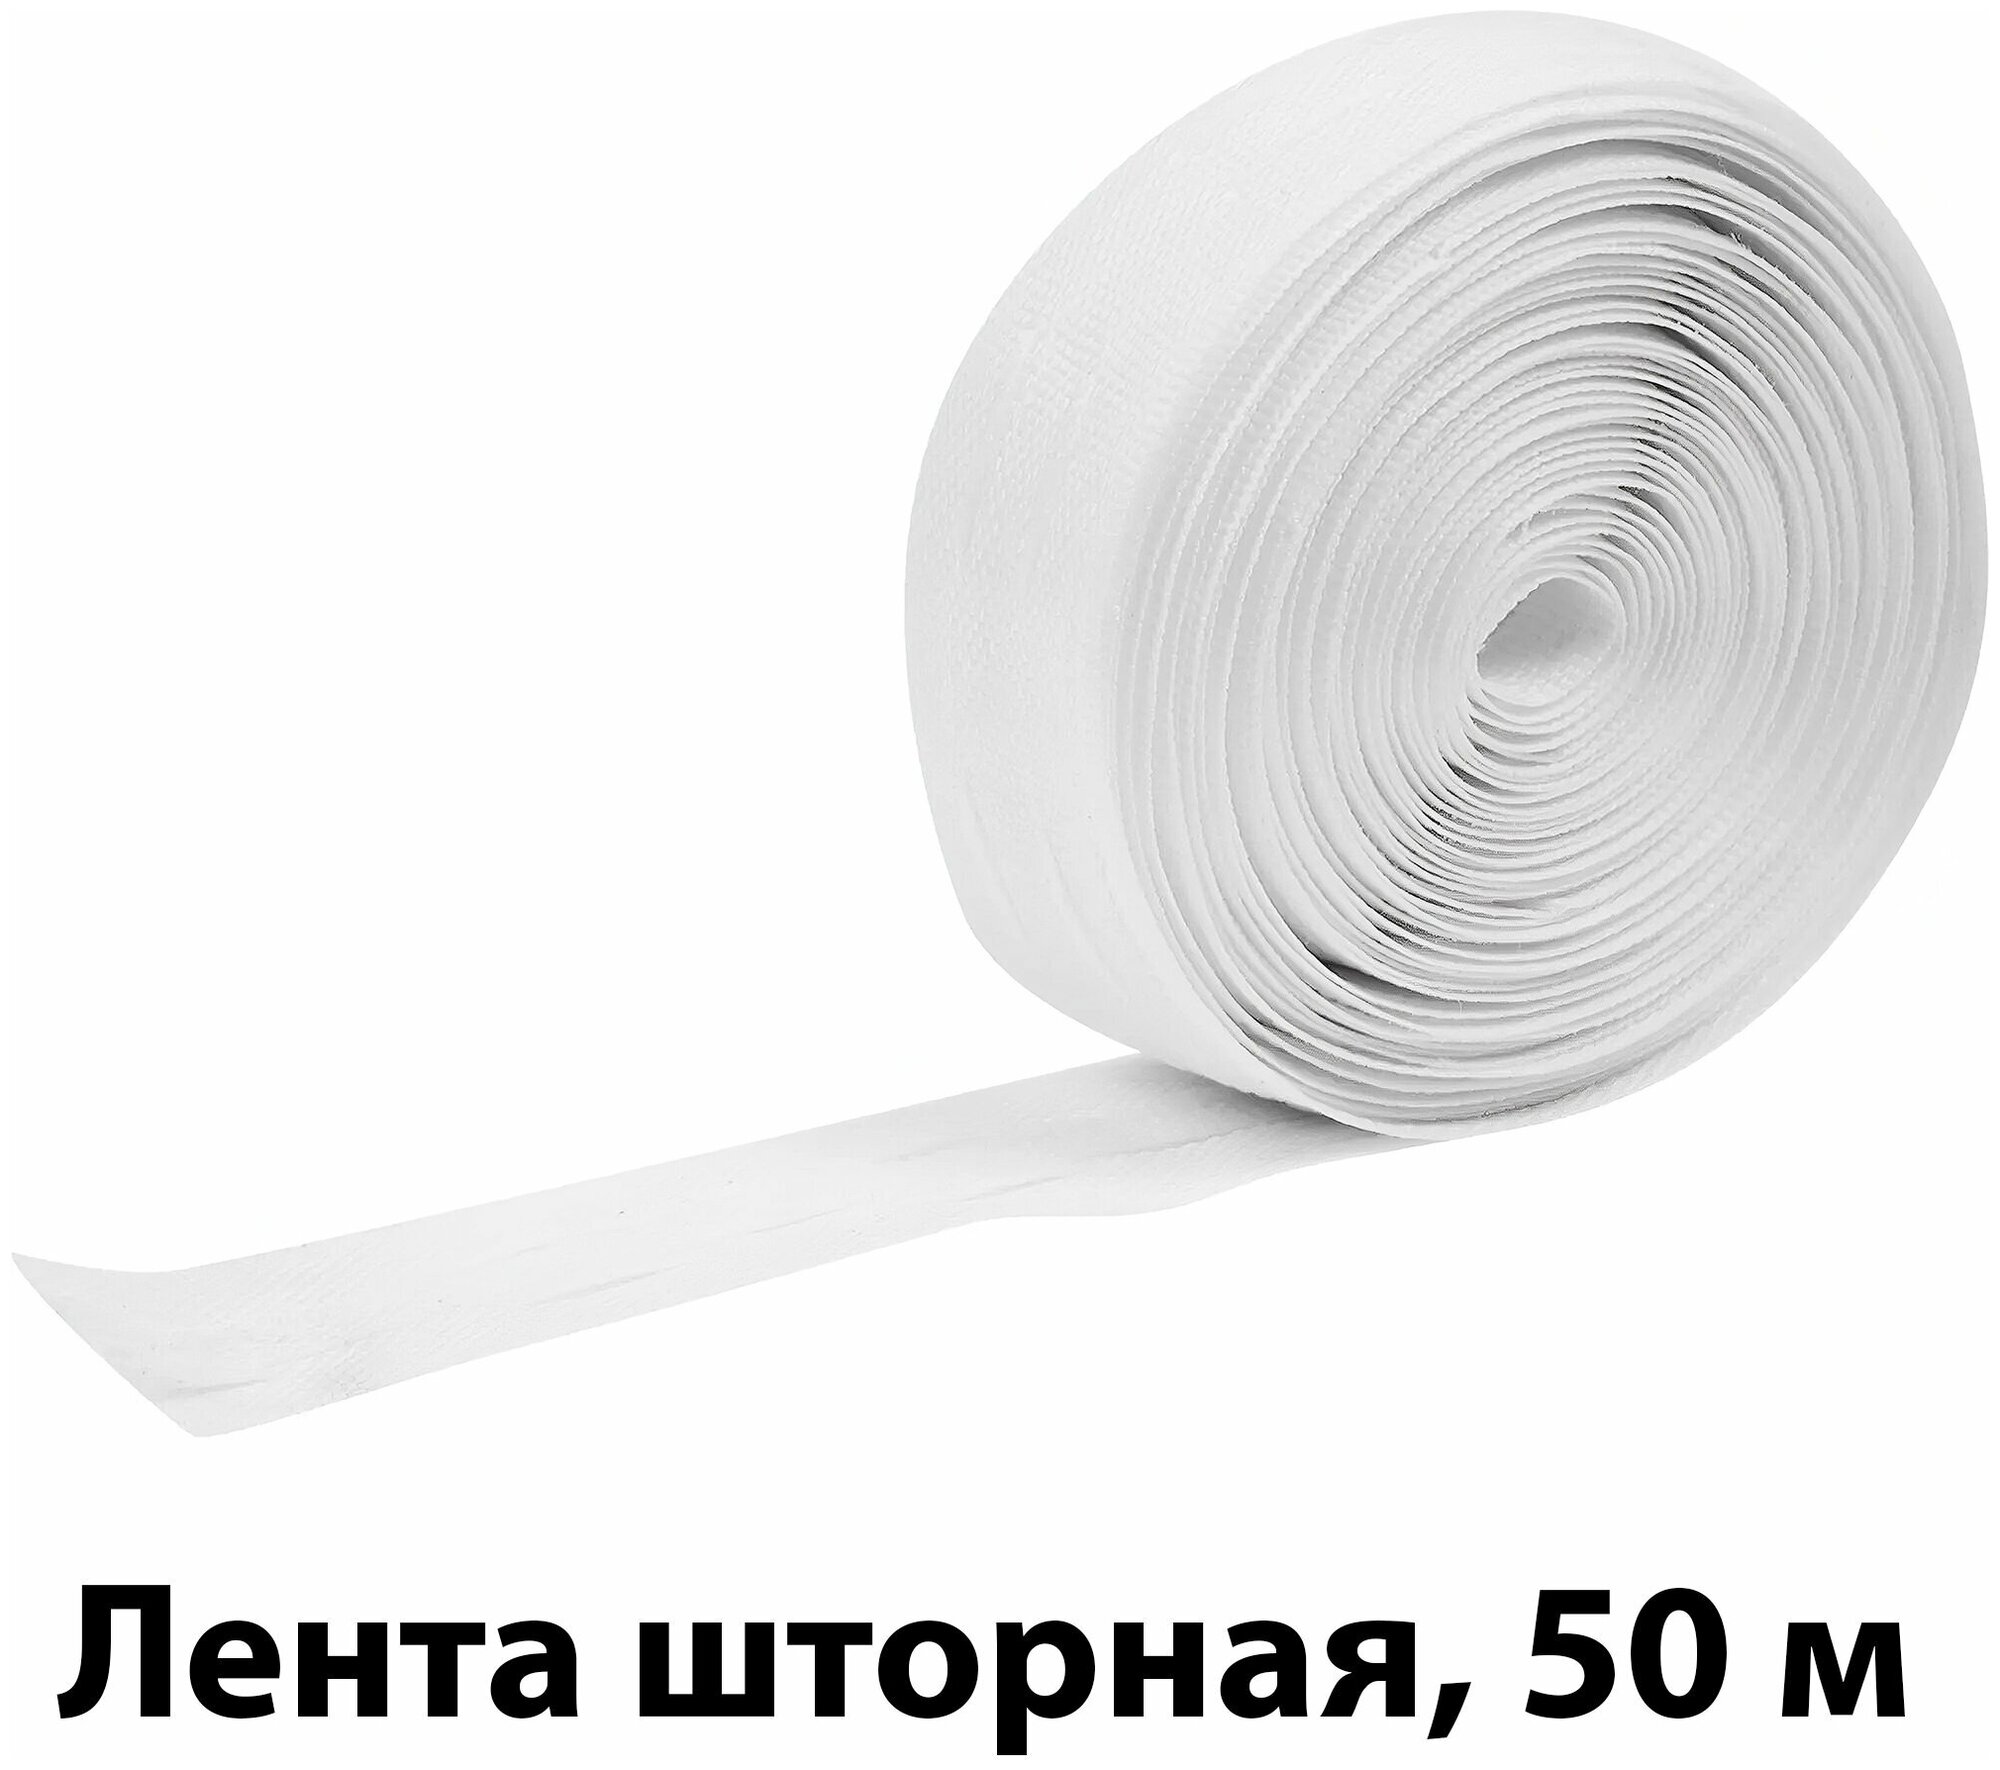 Лента шторная 50 м: 25 мм; цвет матовый белый; упрощает процесс пошива гардин; не требует пришивания петель для фиксации ткани на крючки - на ленте у